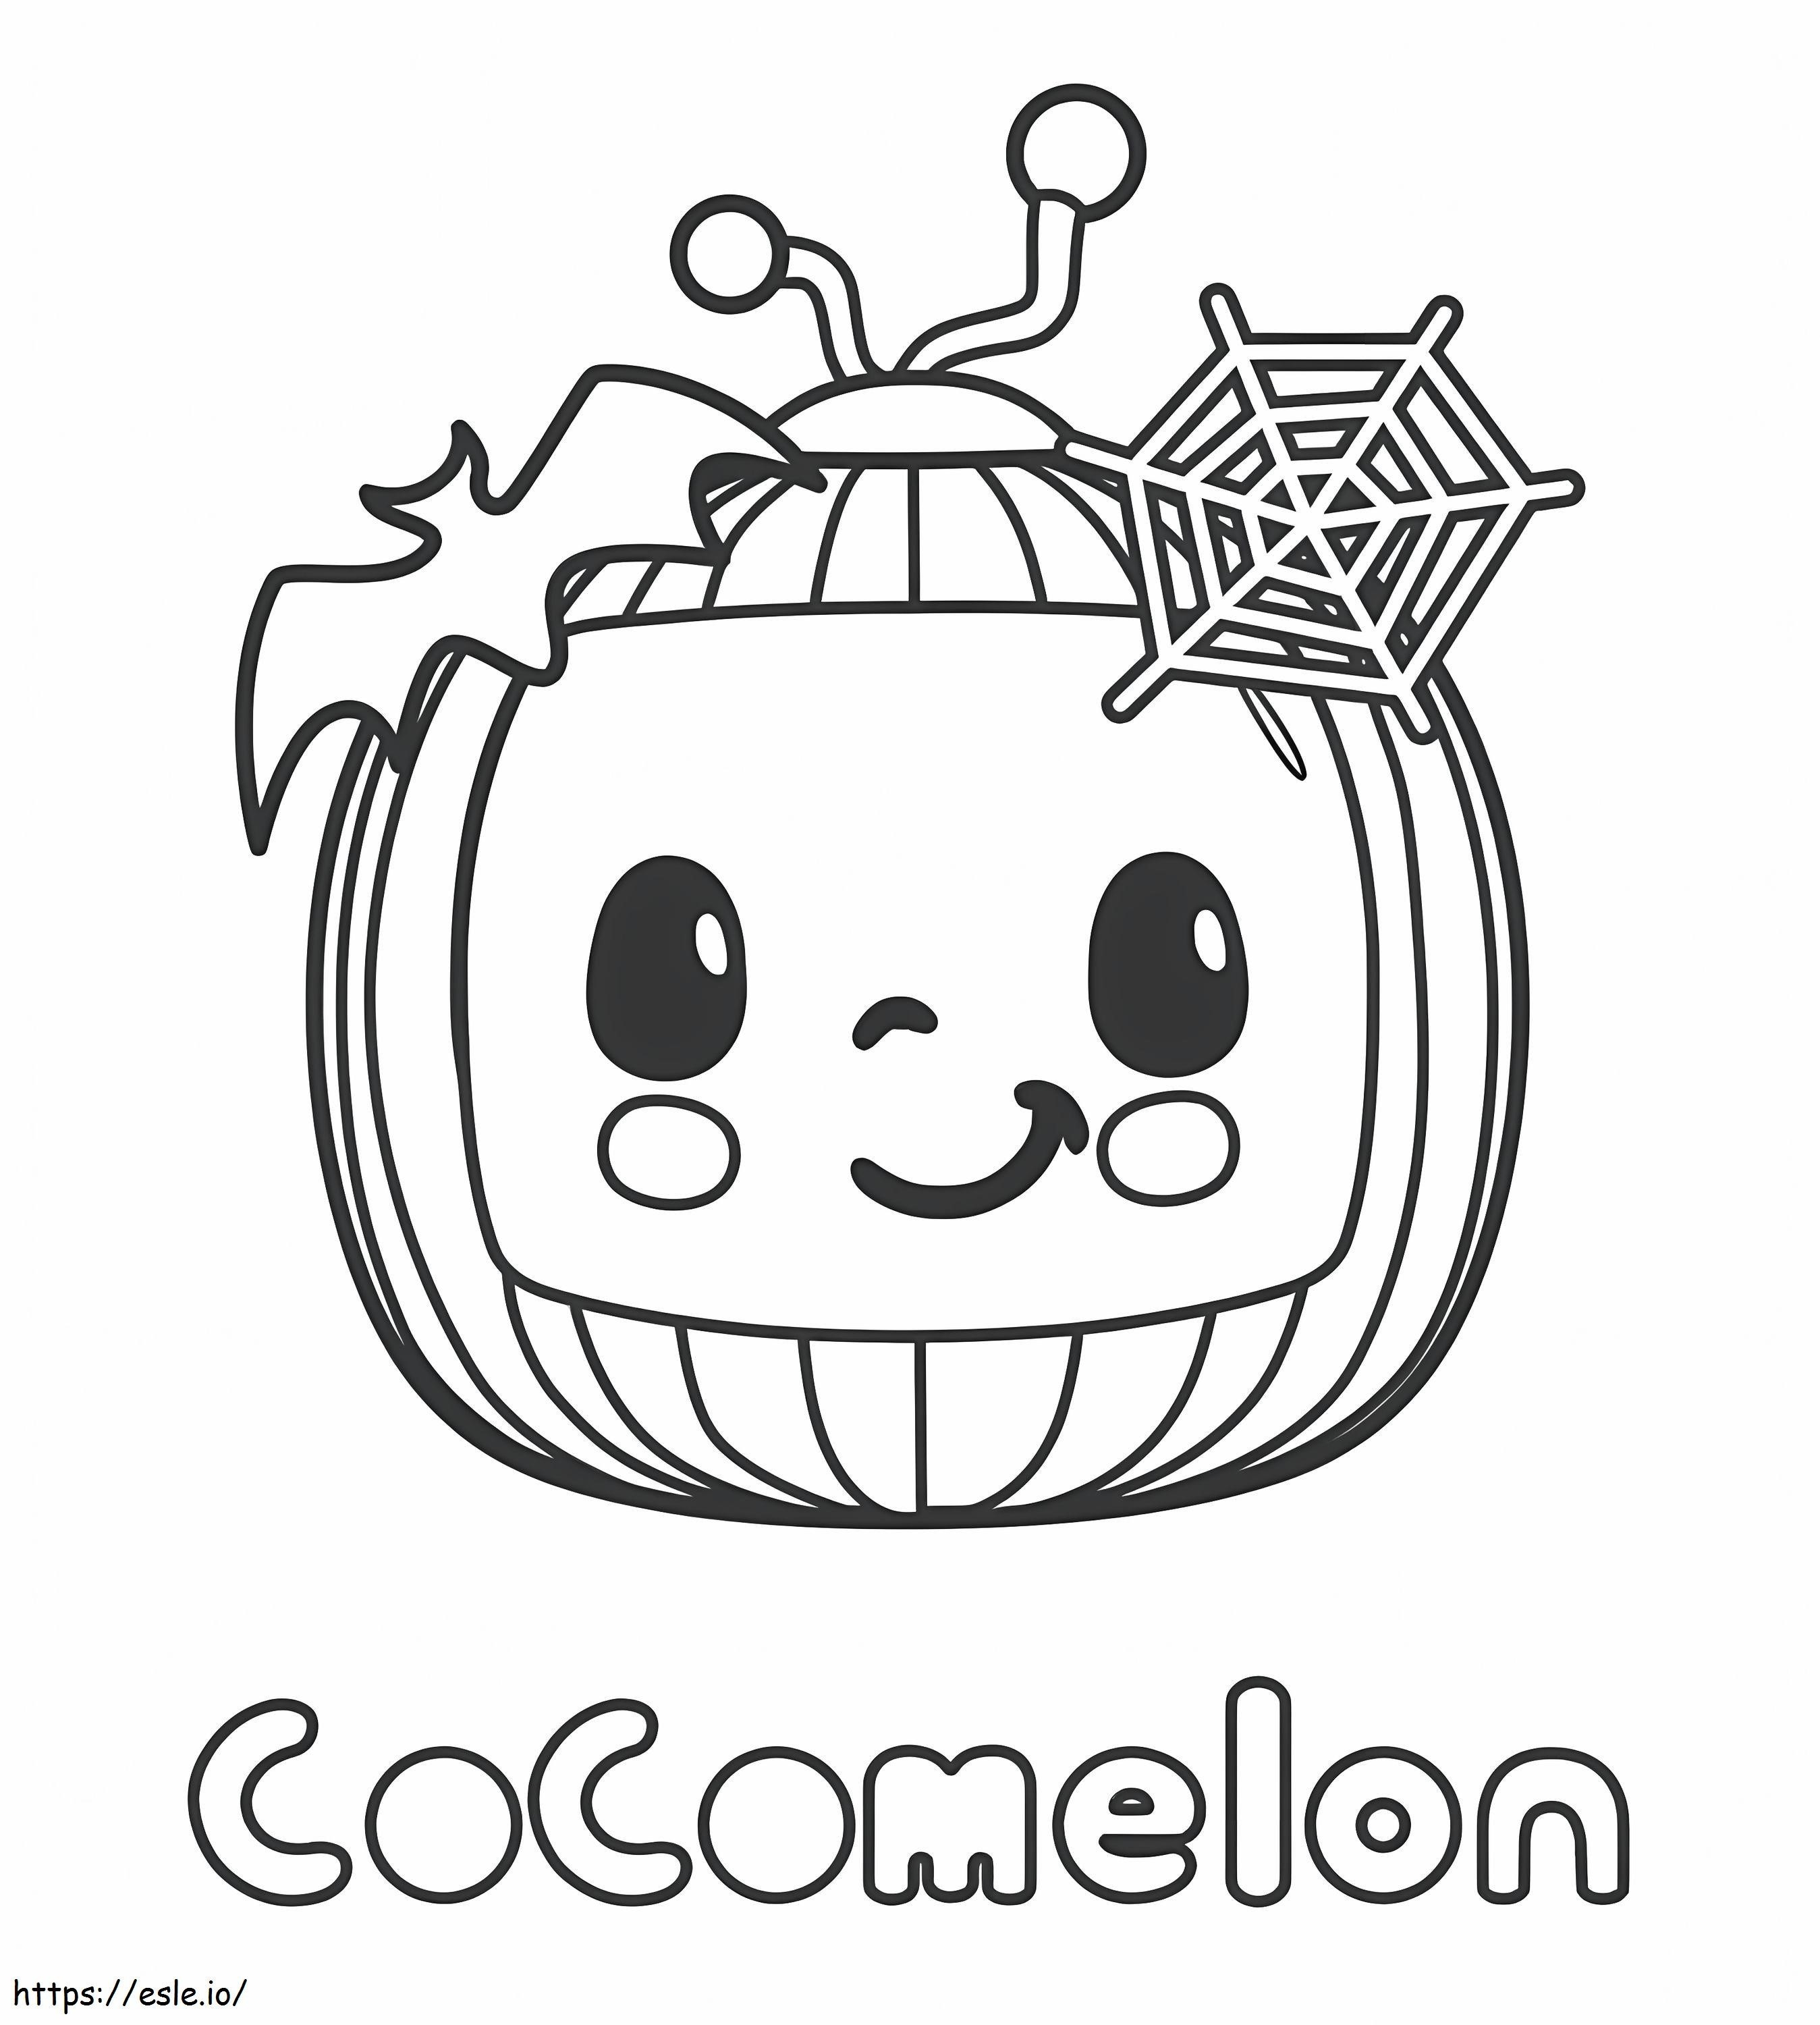 Logo di Halloween Cocomelon da colorare